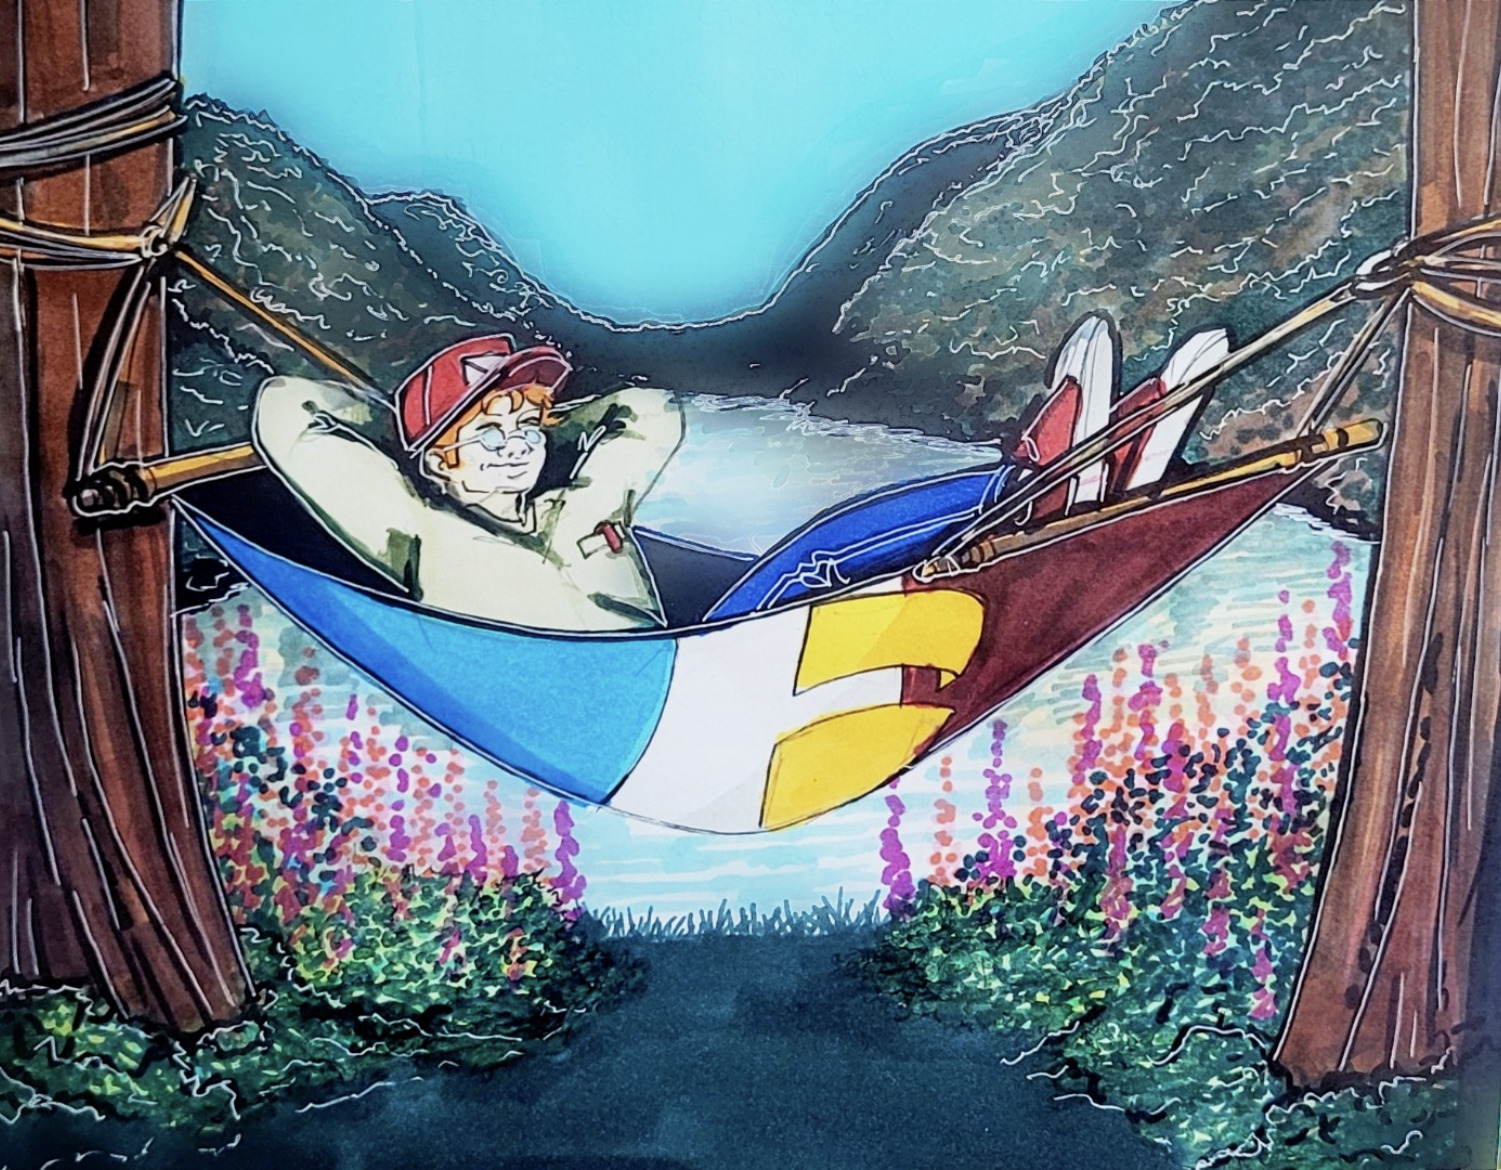 Le héros, le gaboteur, s'allonge sur le drapeau de la francophonie de Terre-Neuve-et-Labrador qui est attaché aux arbres comme un hamac. Il fait beau, il y a de l'eau à l'arrière-plan et des fleurs violettes sur de l'herbe verte au premier plan. 